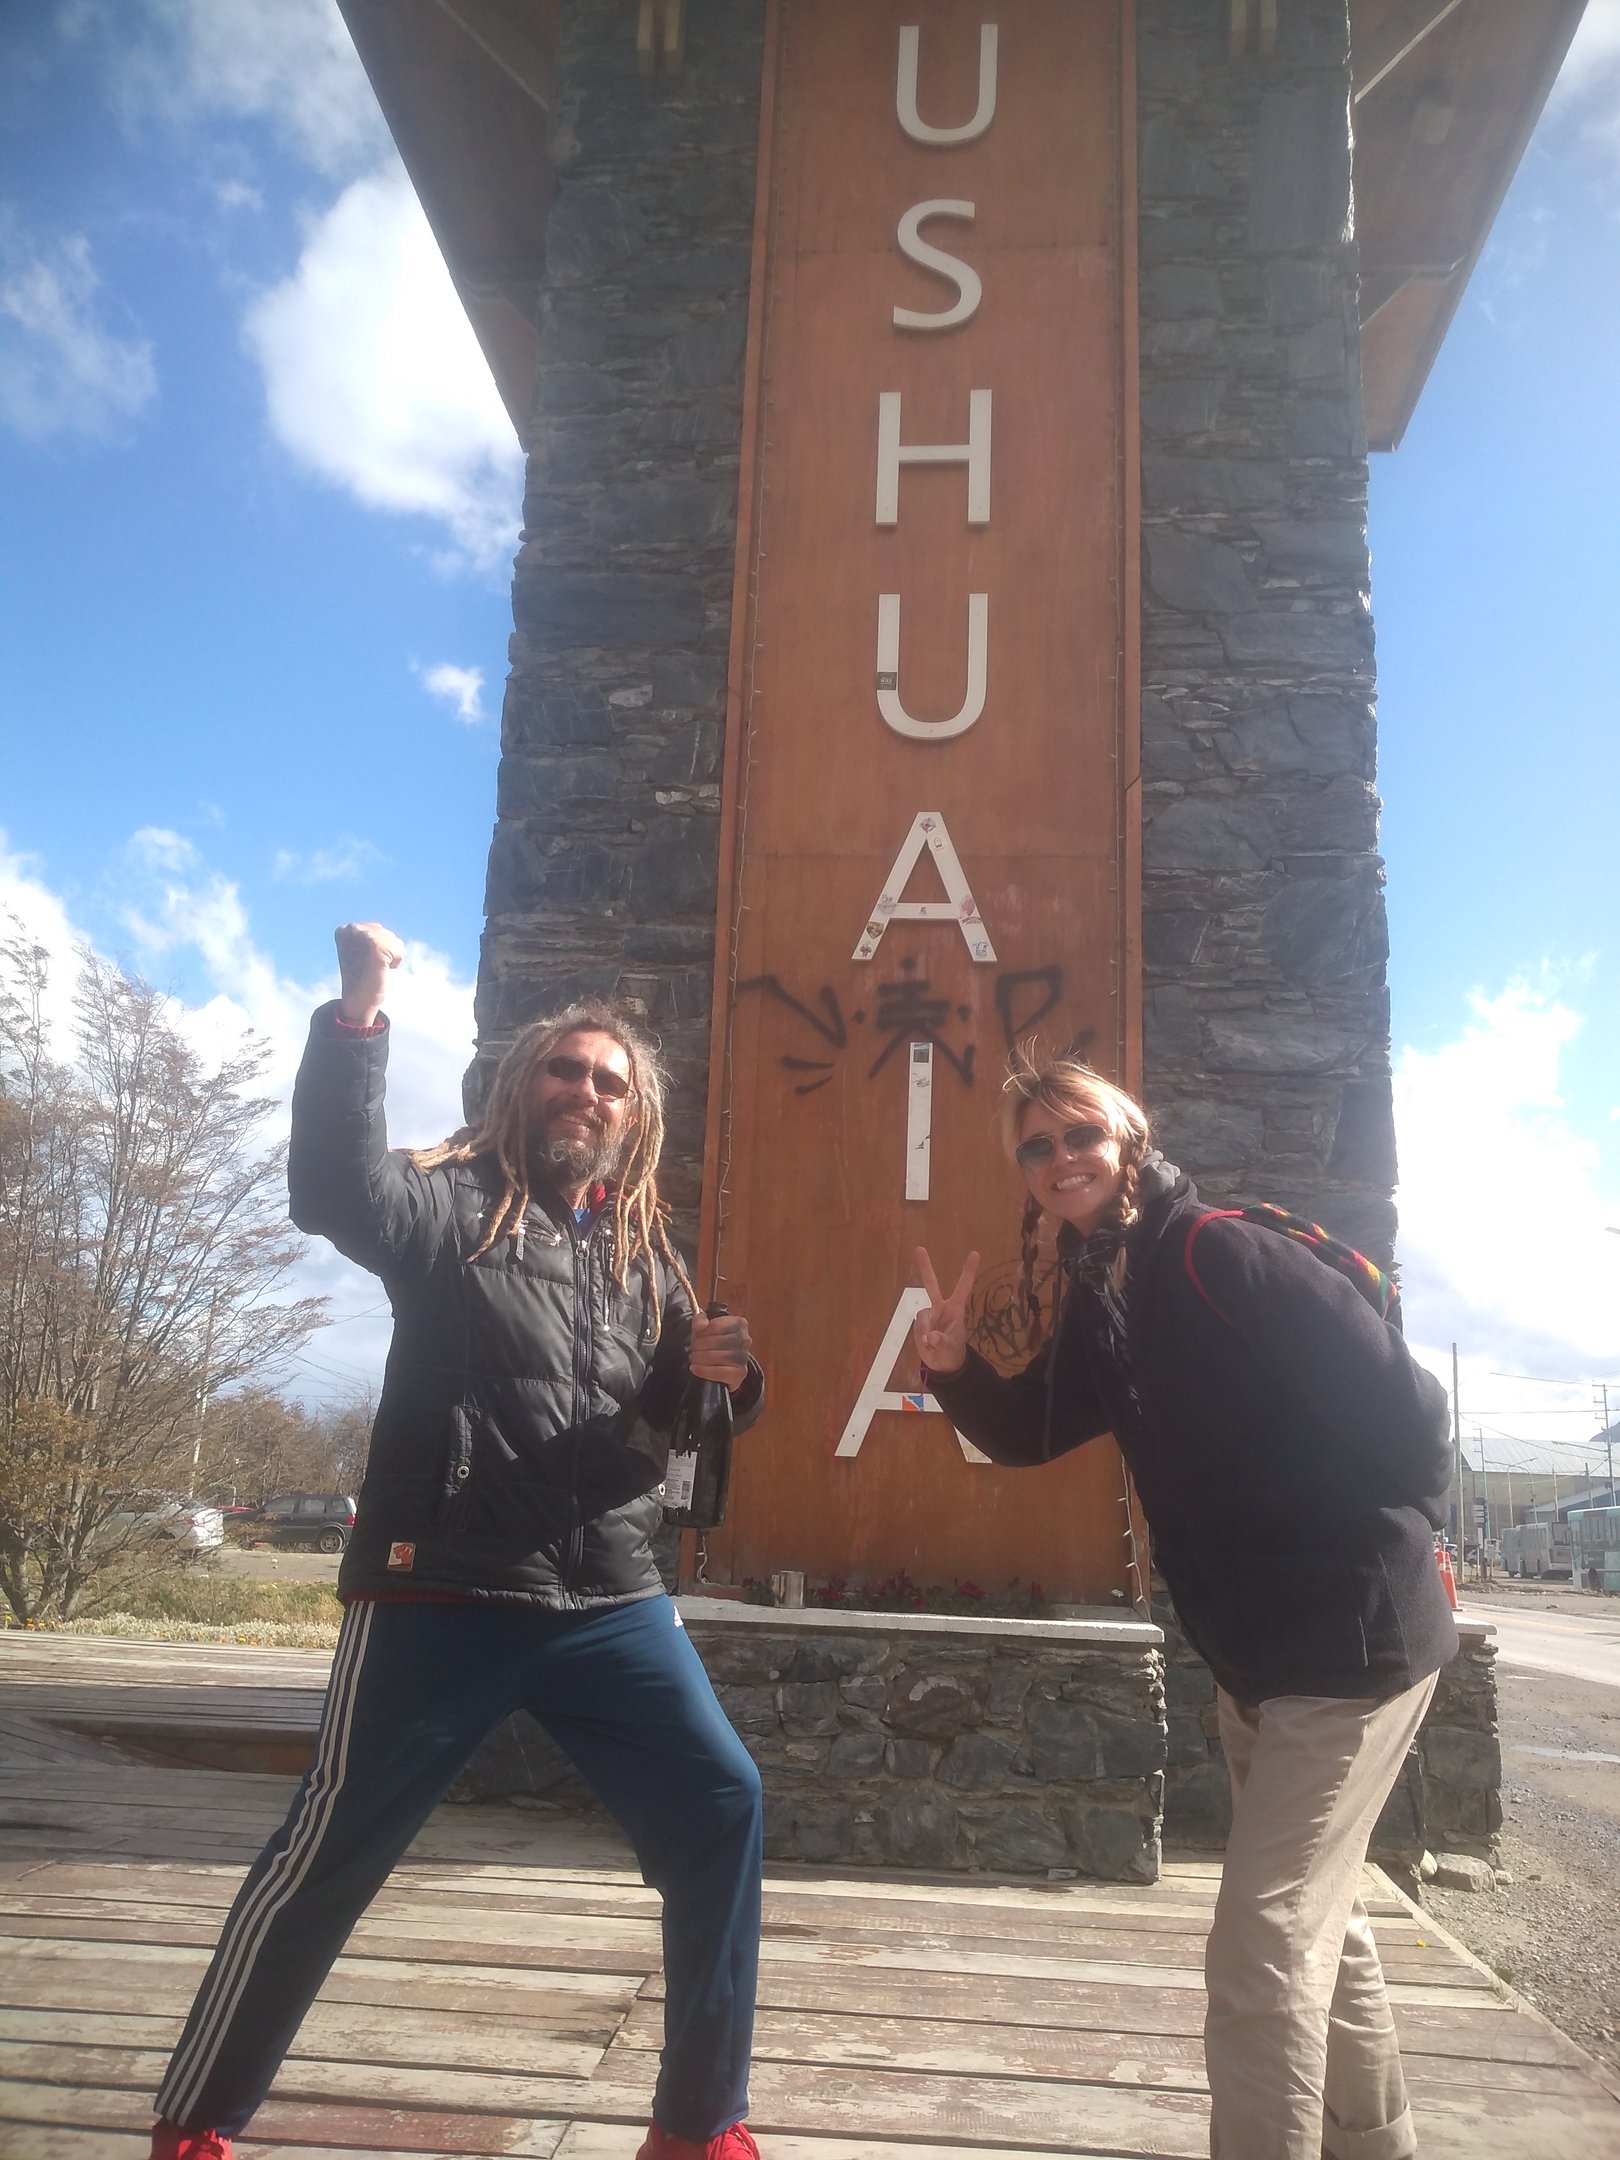 Destino dos sonhos: Ushuaia, na Argentina | Jornal NH